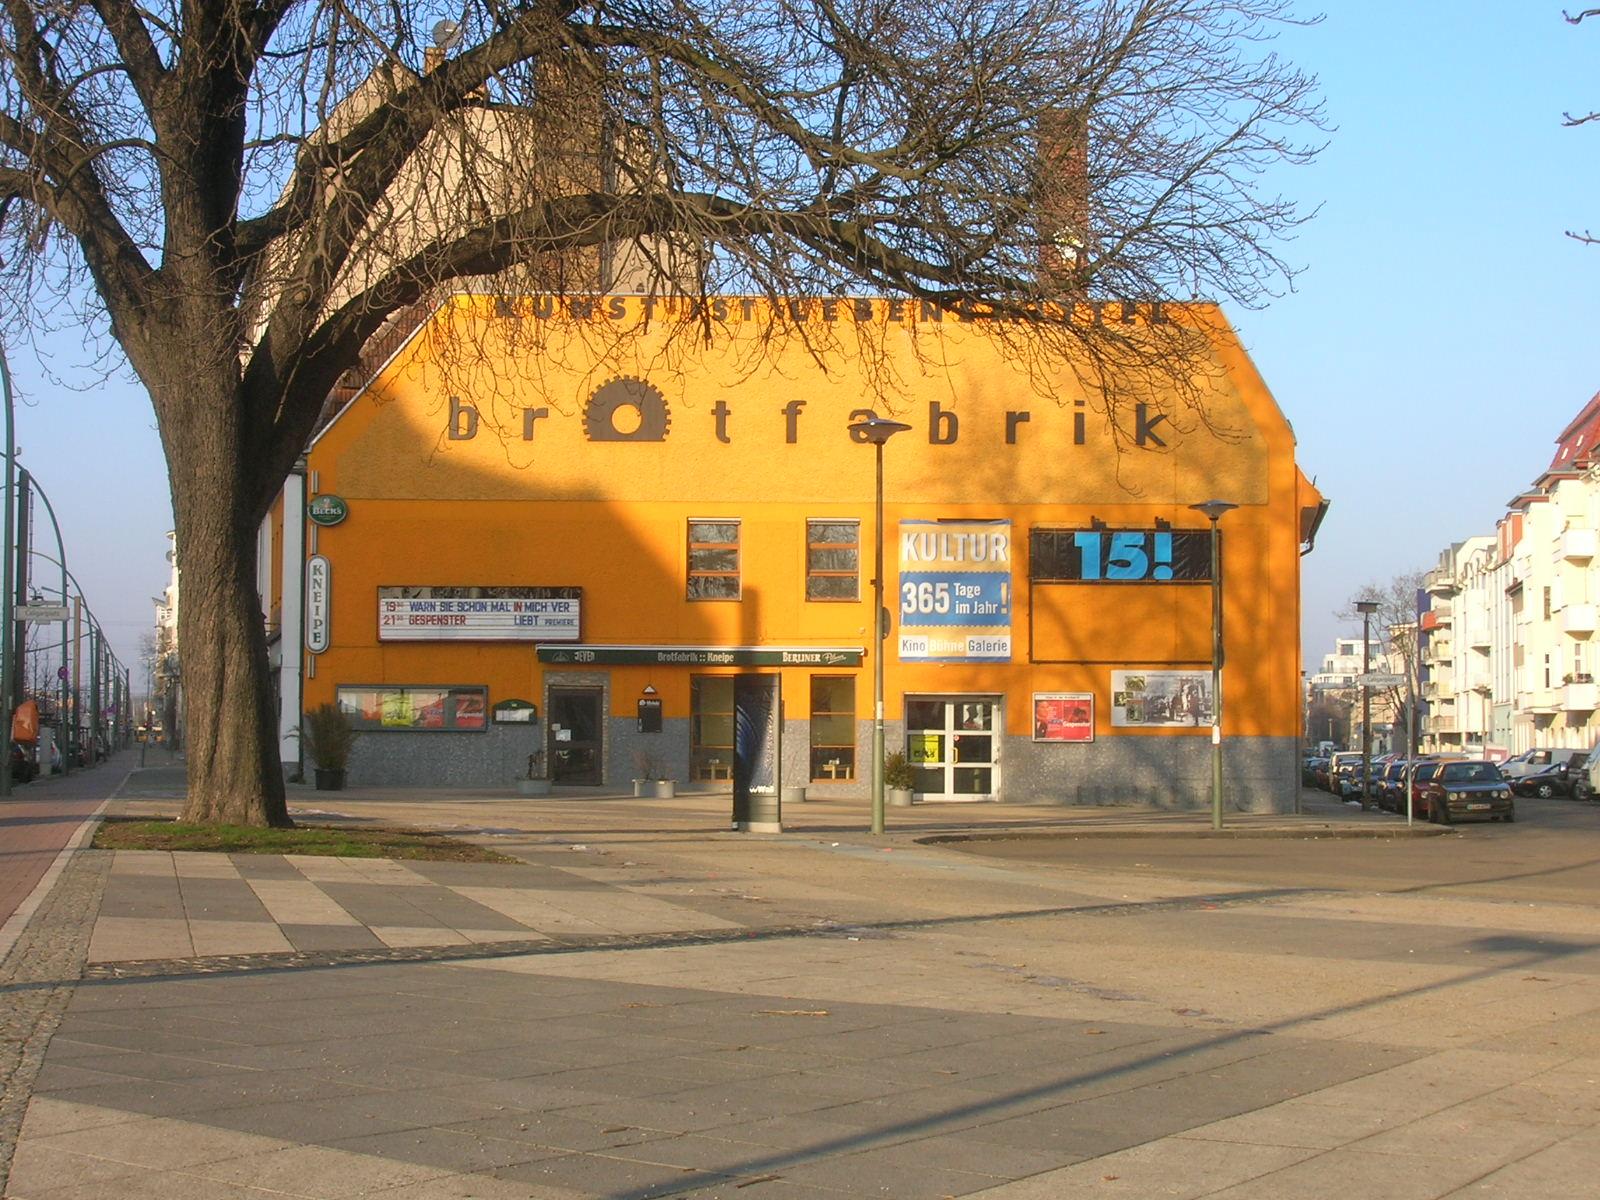 Brotfabrik - Caligariplatz 1, 13086 Berlin, an der "Weißenseer Spitze"